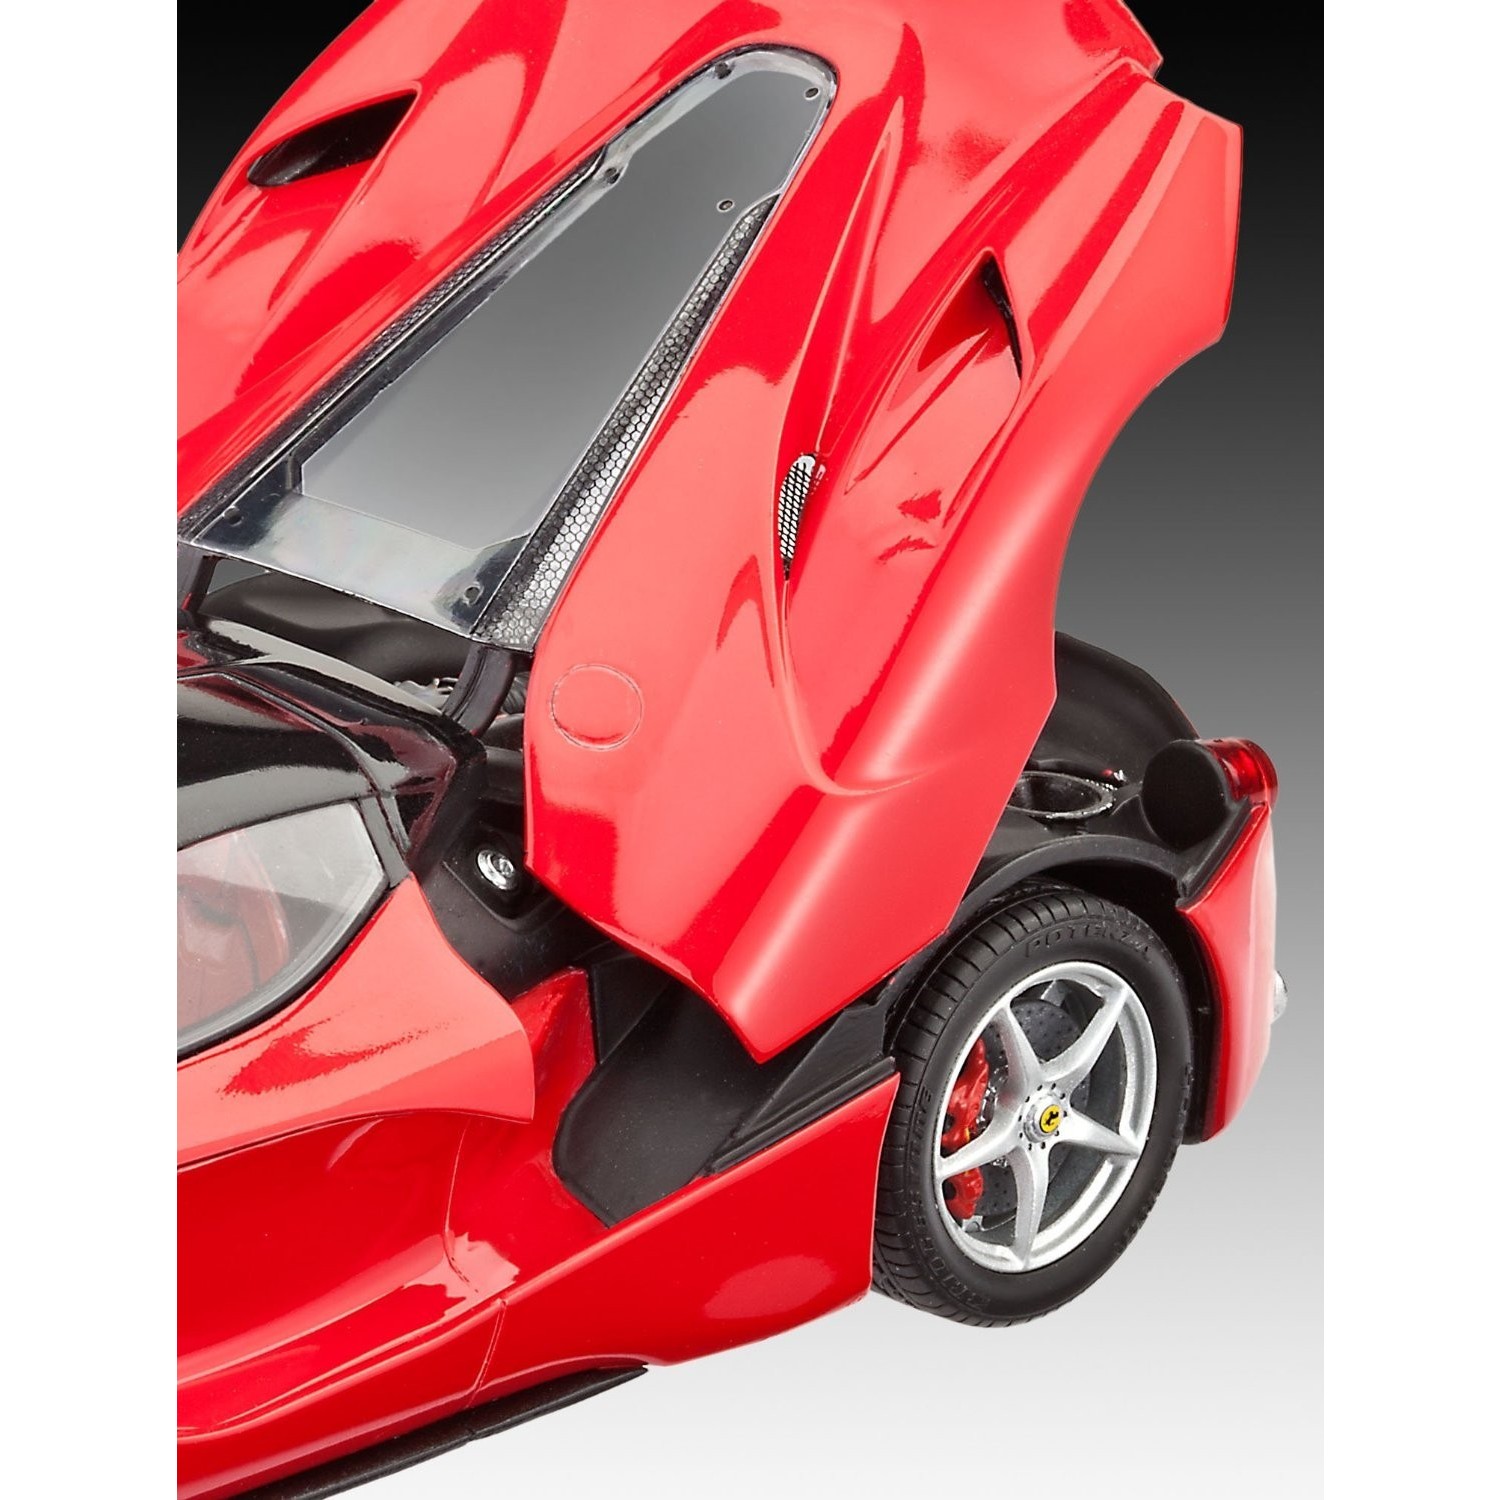 Items car. Ferrari Enzo Revell 1:12. Феррари 1/24. Сборная масштабная модель 1:24 Ferrari LAFERRARI. Сборная модель Revell Ferrari Enzo (07309) 1:24.